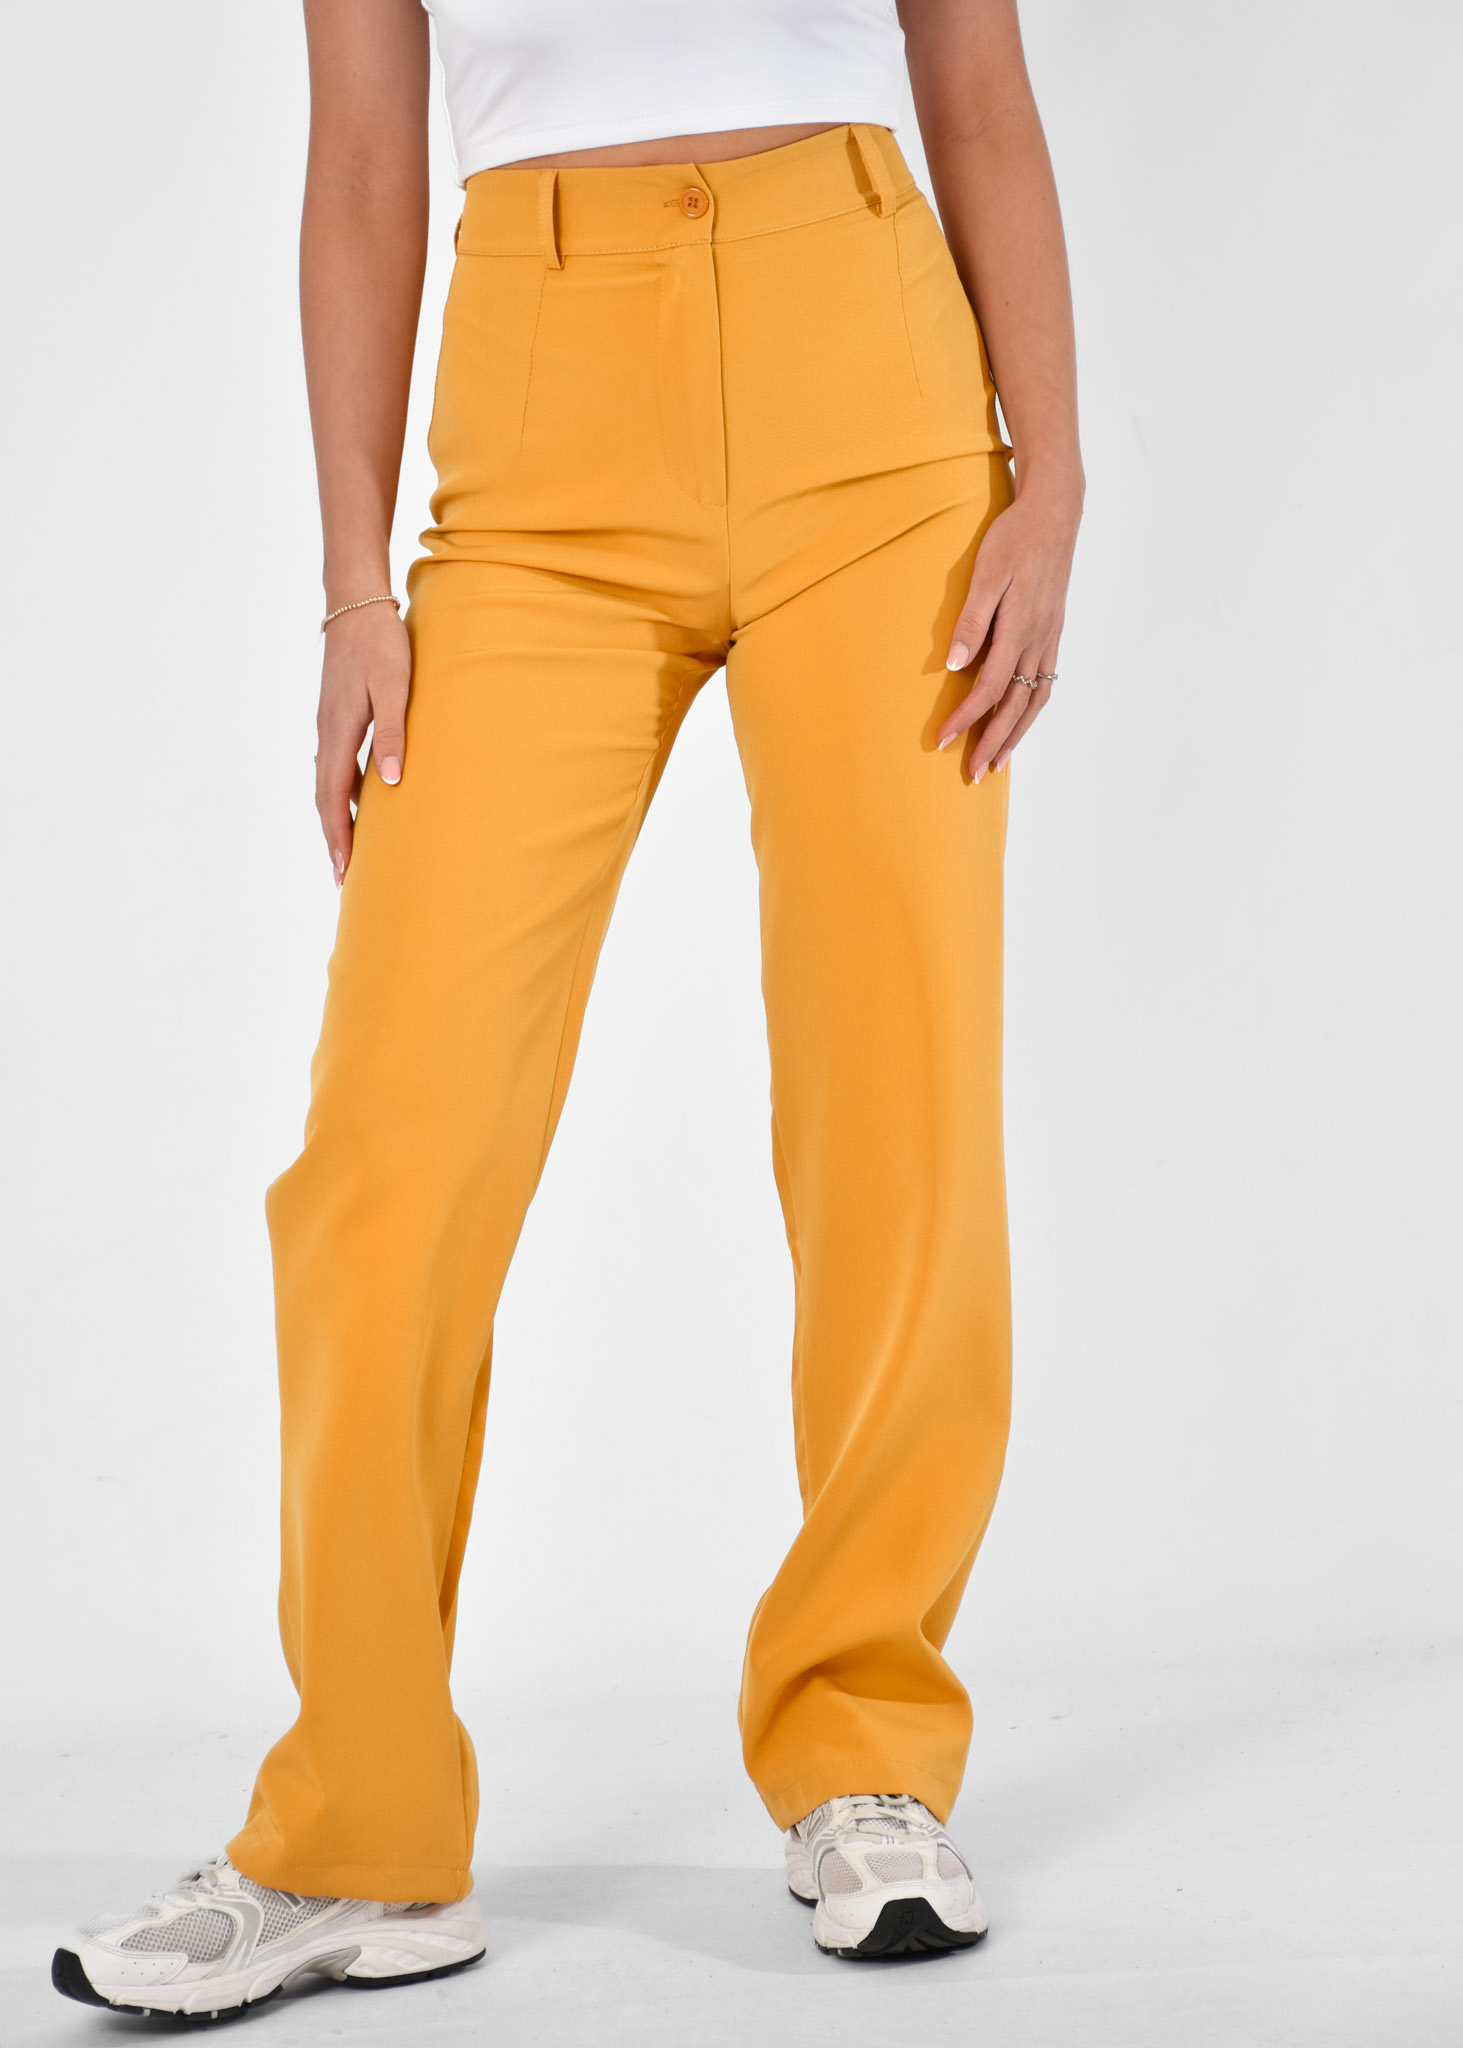 Romy pantalon geel